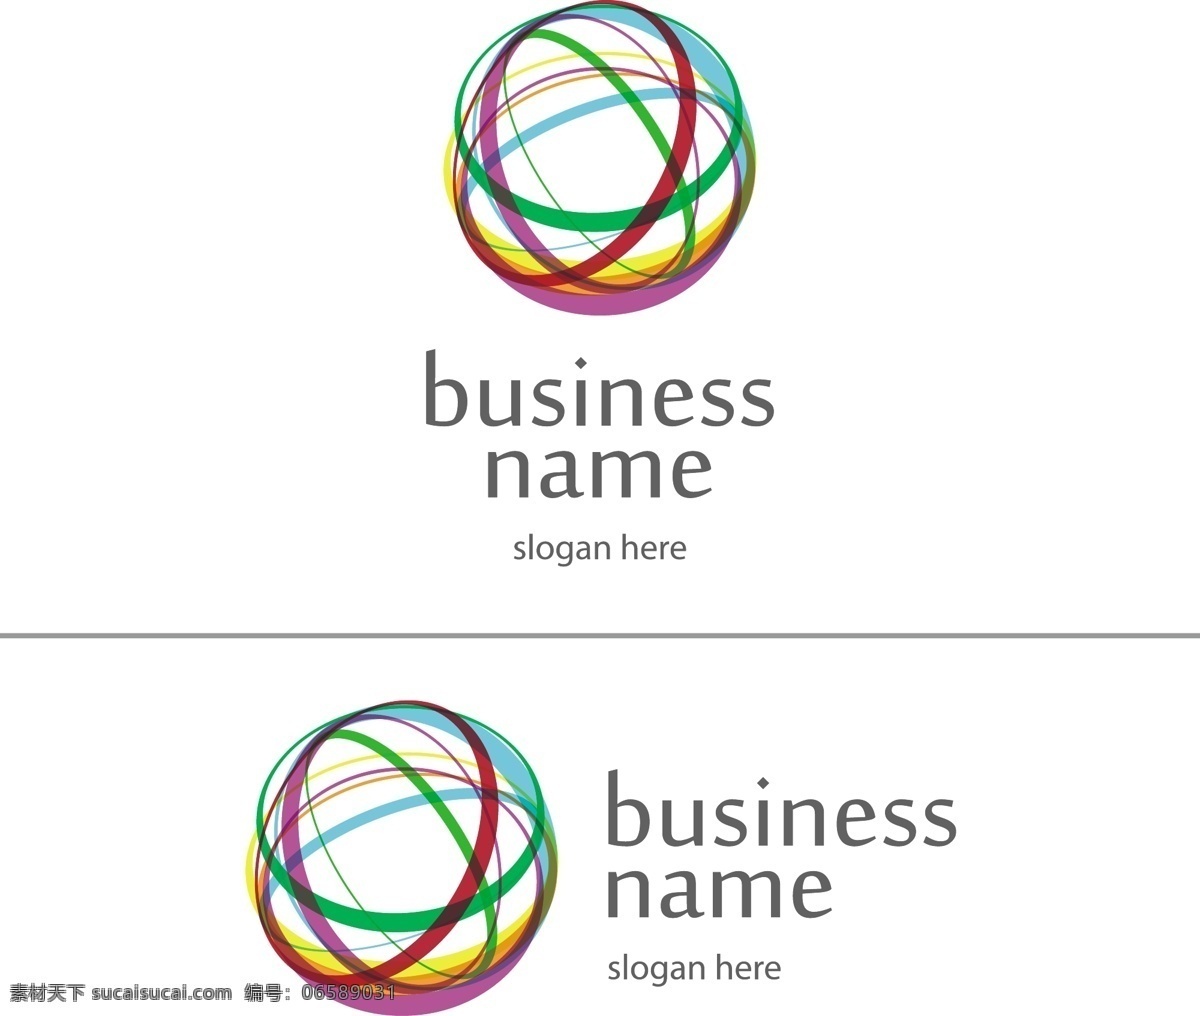 彩色 球体 logo 环形 公司logo 企业logo 创意 标志设计 商标设计 logo图形 标志图标 矢量素材 白色